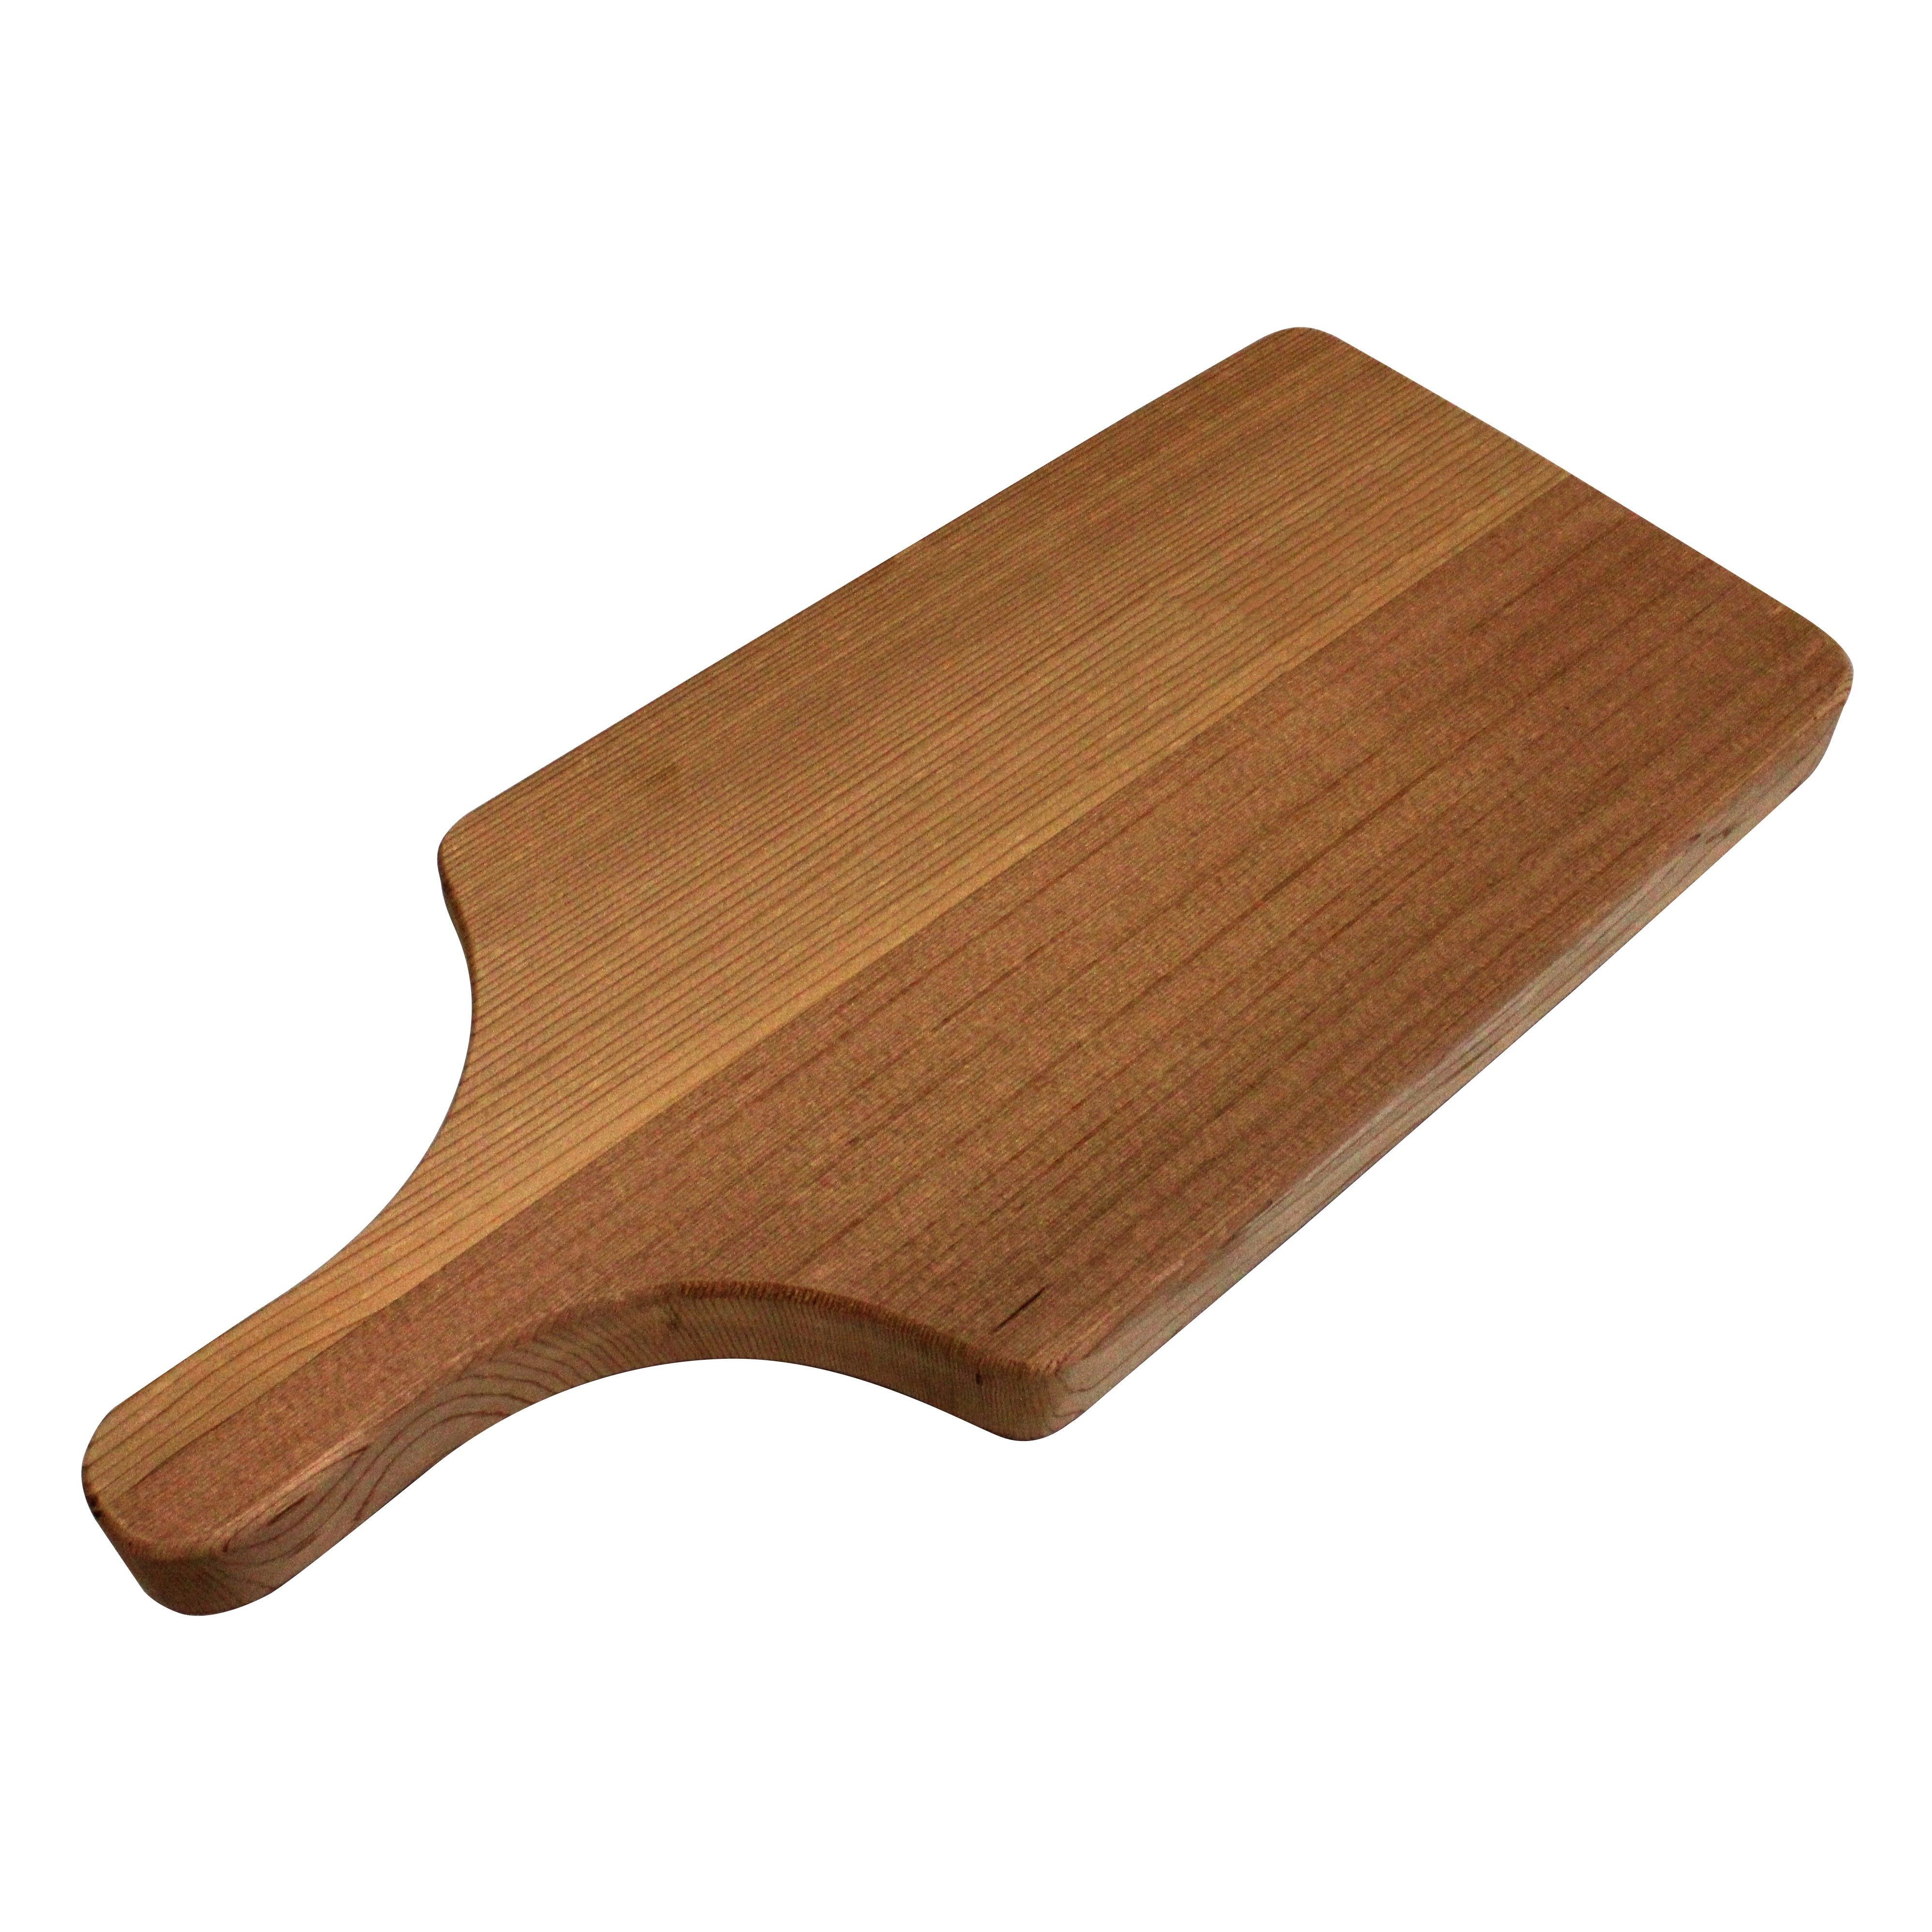 Handcrafted Cedar Cutting Board